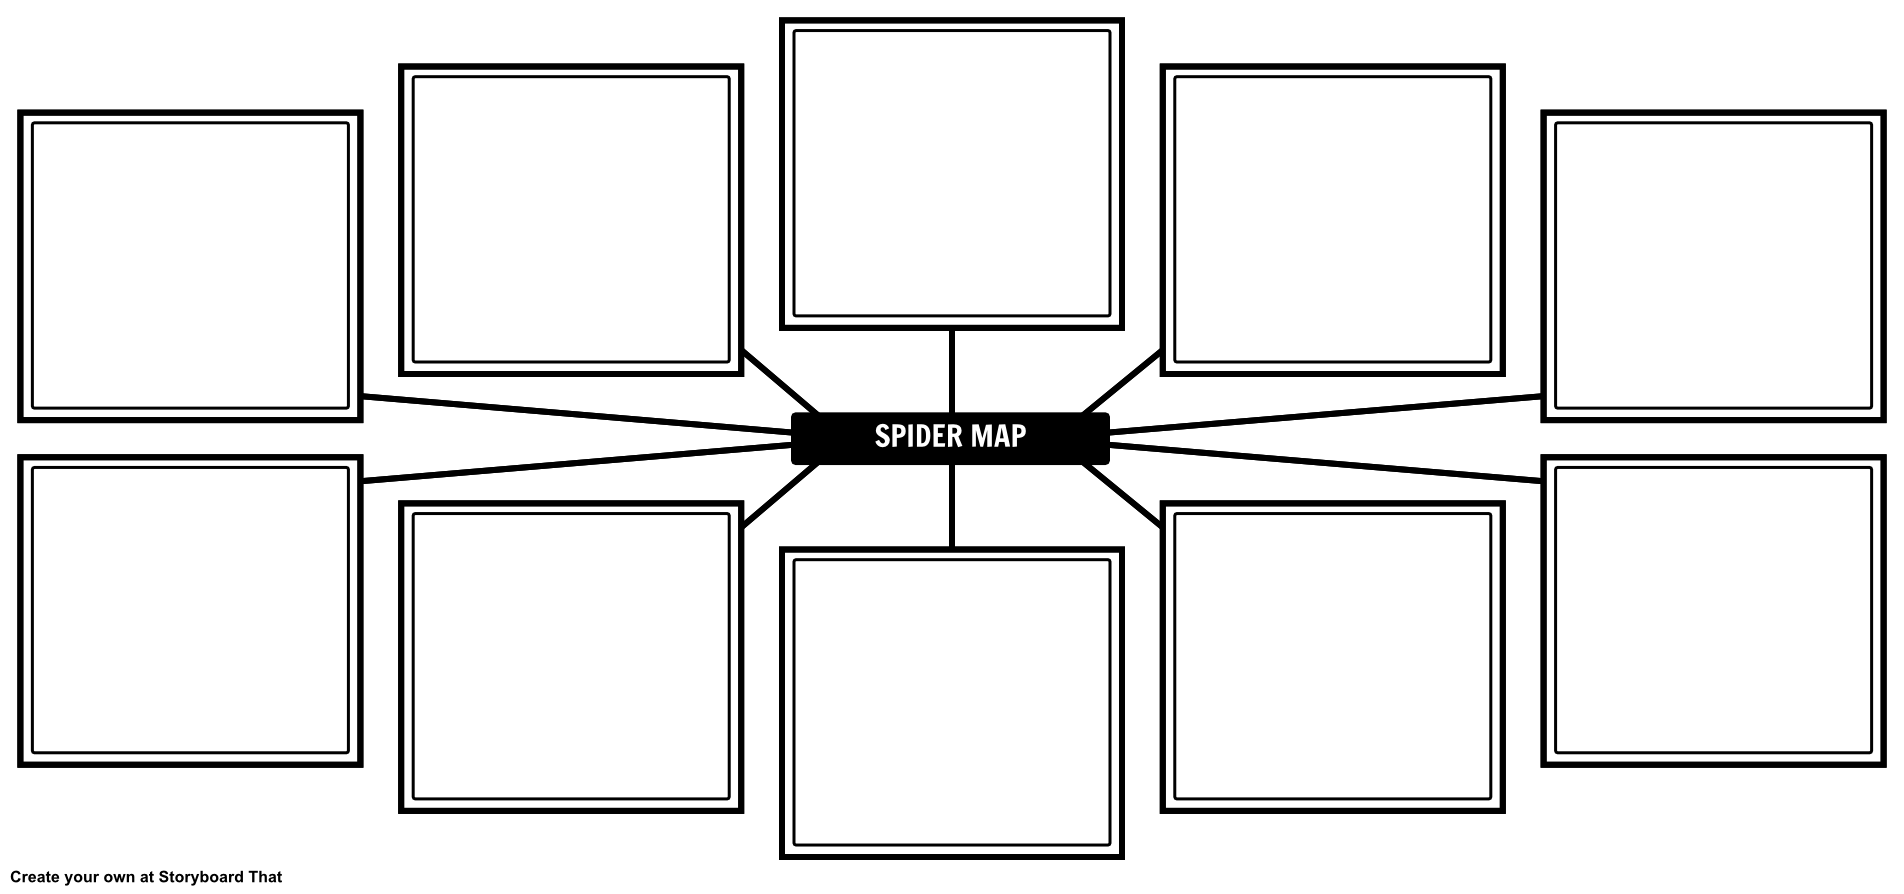 spider-map-blank-example-natashalupiani